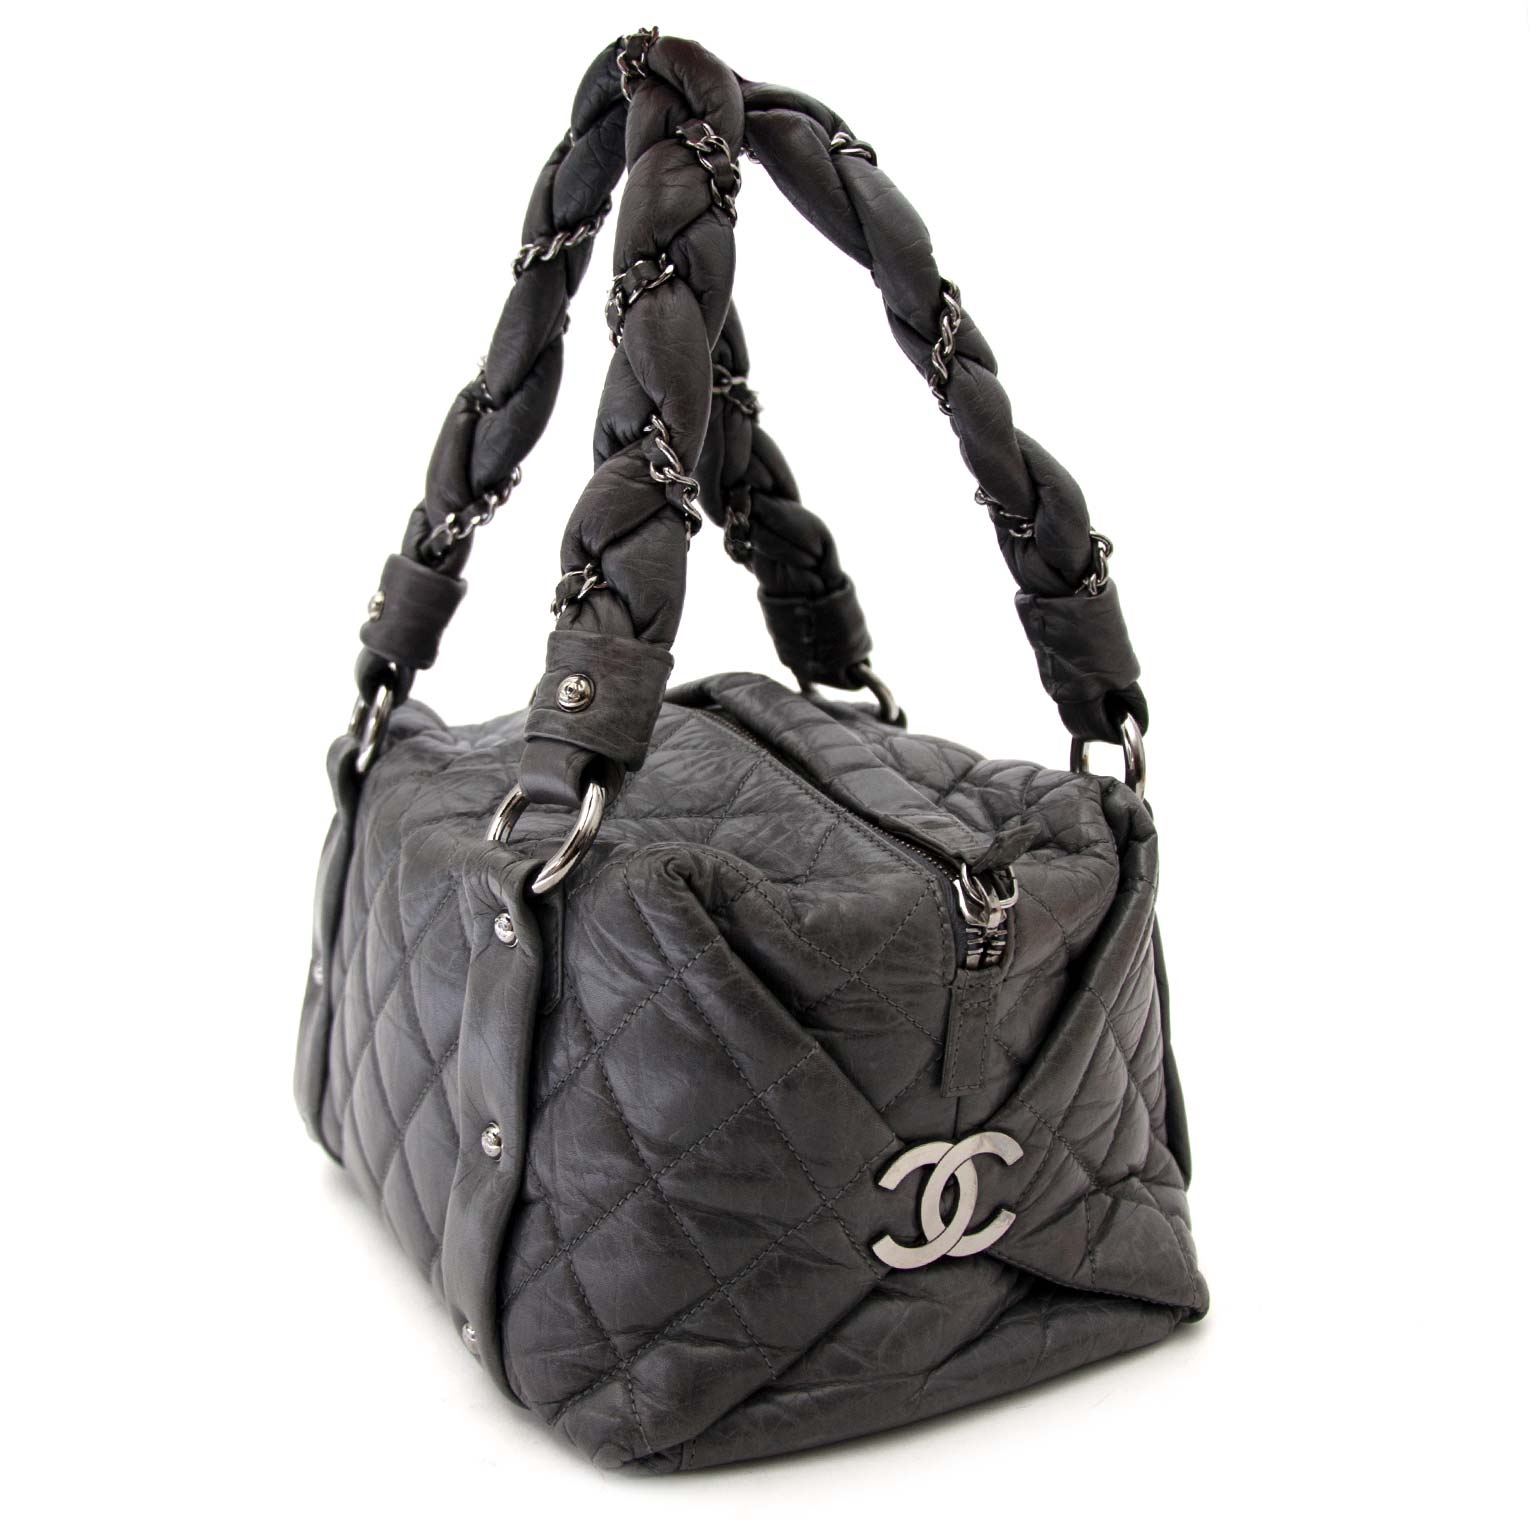 Labellov Shop safe online: authentic vintage Chanel clothes, bags ...